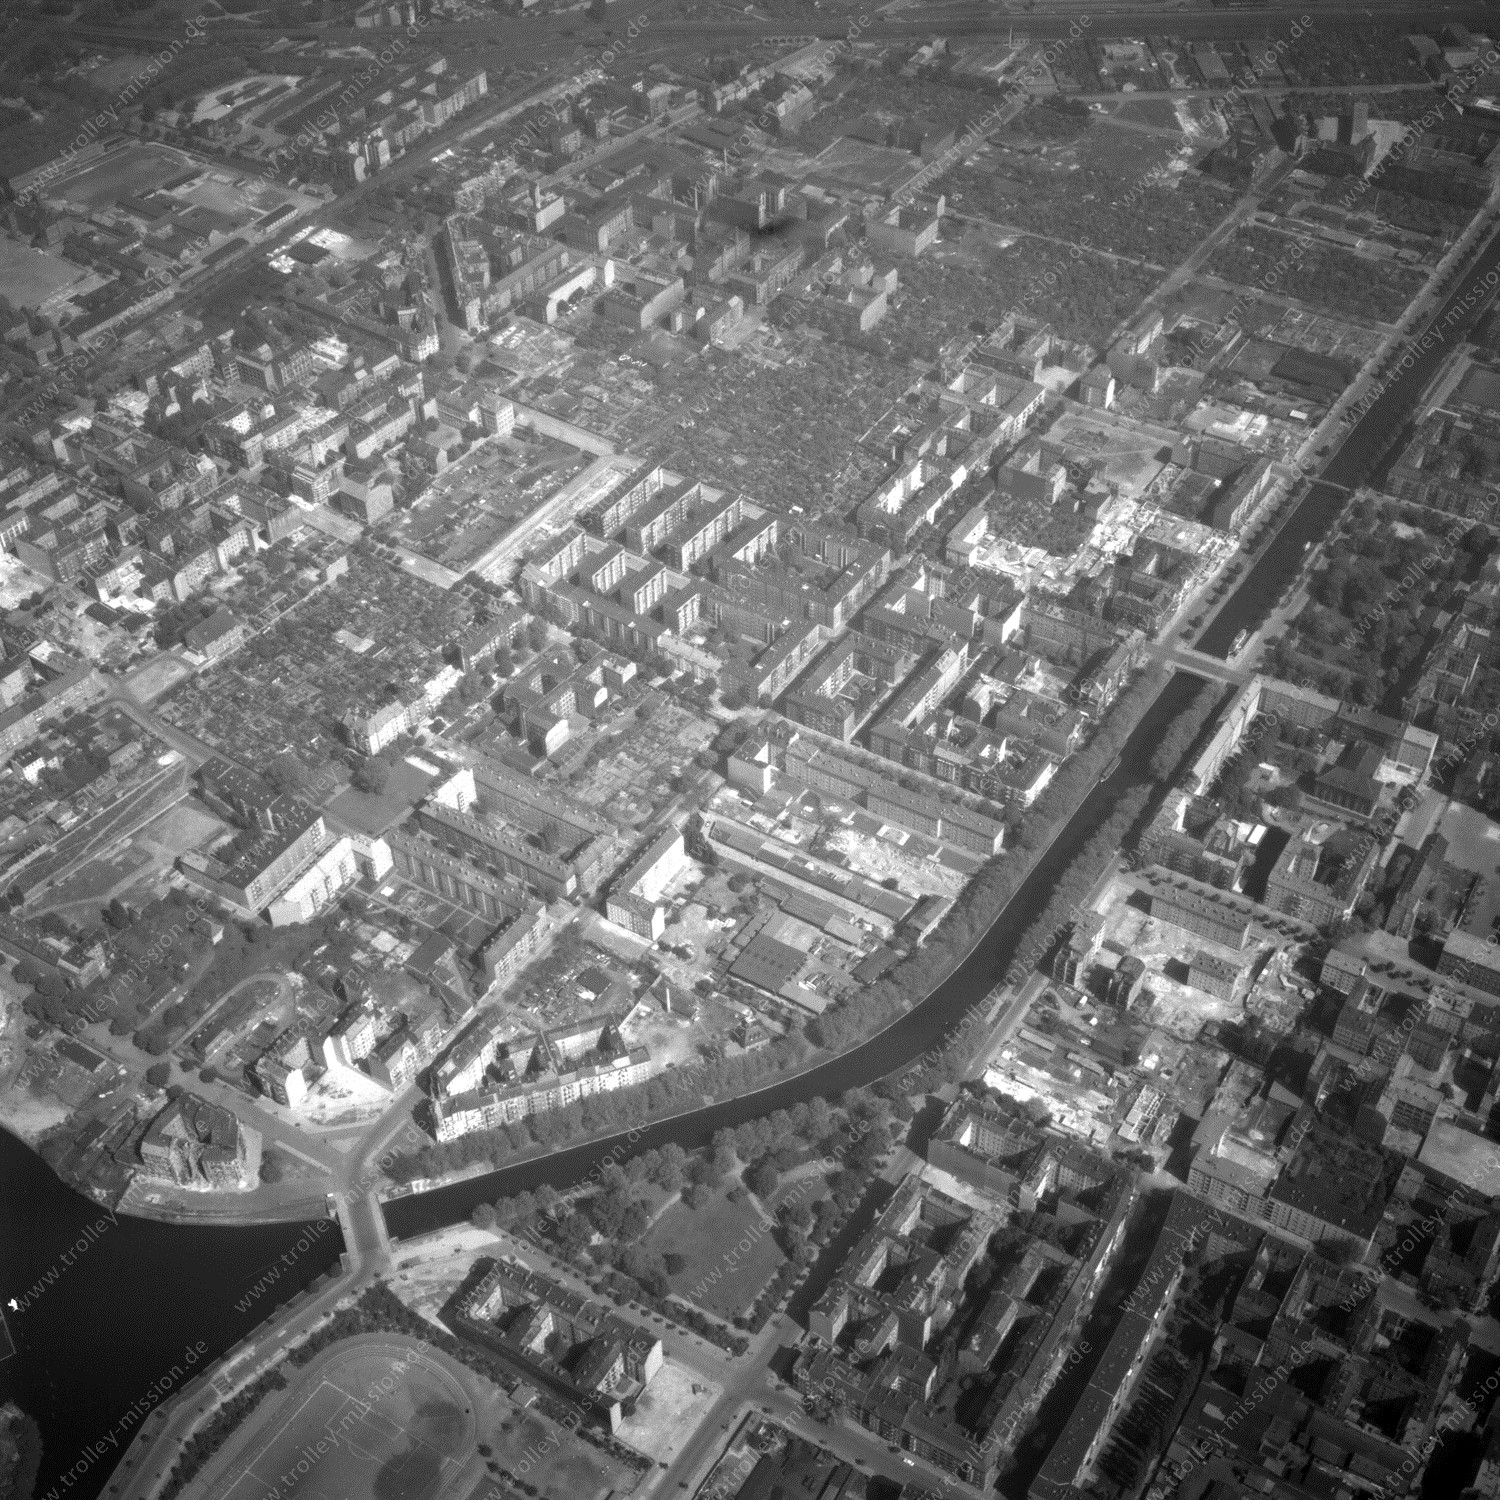 Alte Fotos und Luftbilder von Berlin - Luftbildaufnahme Nr. 01 - Historische Luftaufnahmen von West-Berlin aus dem Jahr 1954 - Flugstrecke November